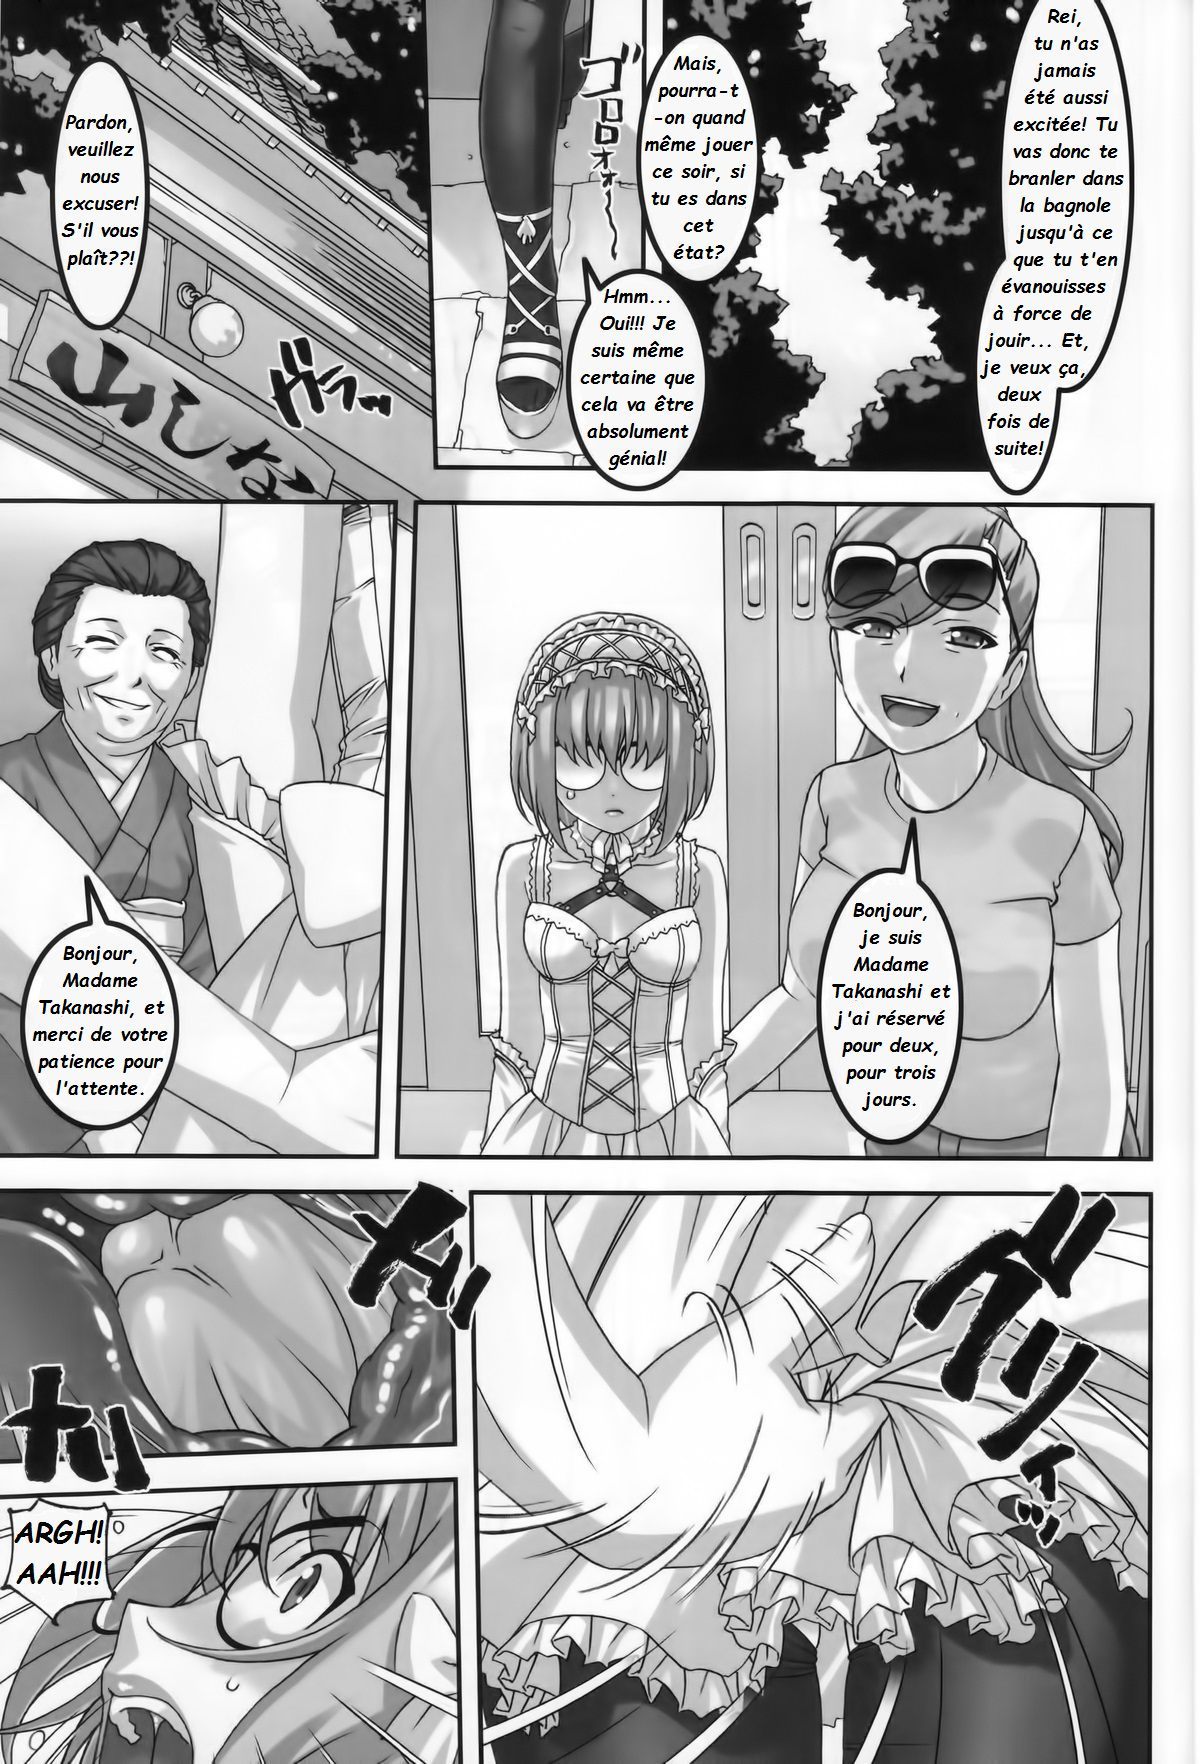 Anoko ga Natsuyasumi ni Ryokou saki de Oshiri no Ana wo Kizetsu suru hodo Naburare tsuzukeru Manga  La jeune Rei et sa nounou Misuzu. Volume 2 numero d'image 12